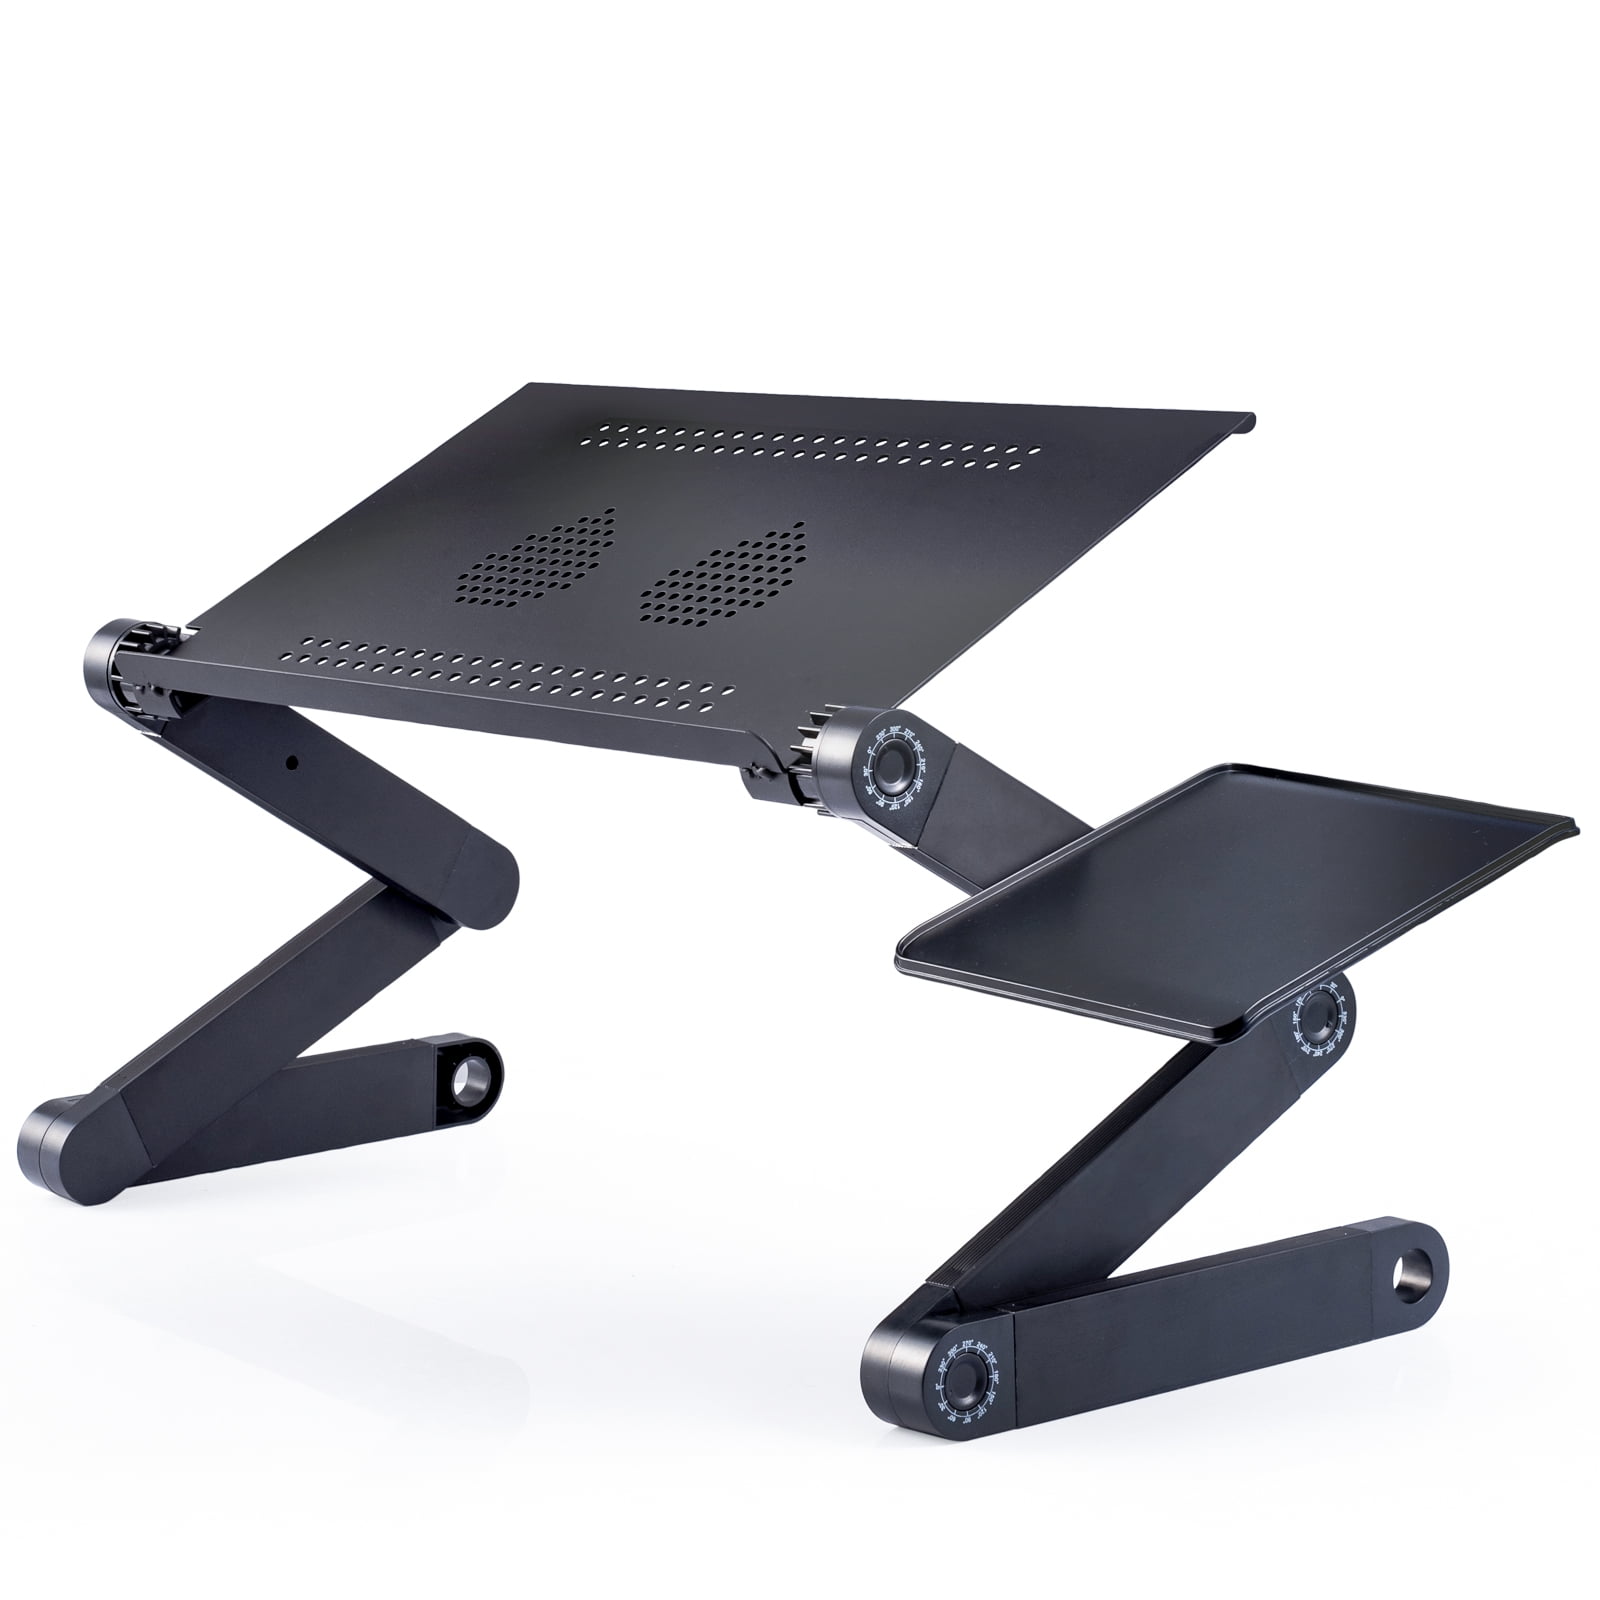 Black Generic Adjustable Notebook Cooling Stand Laptop Riser Holder Cooler Pad 360 Degree Rotating